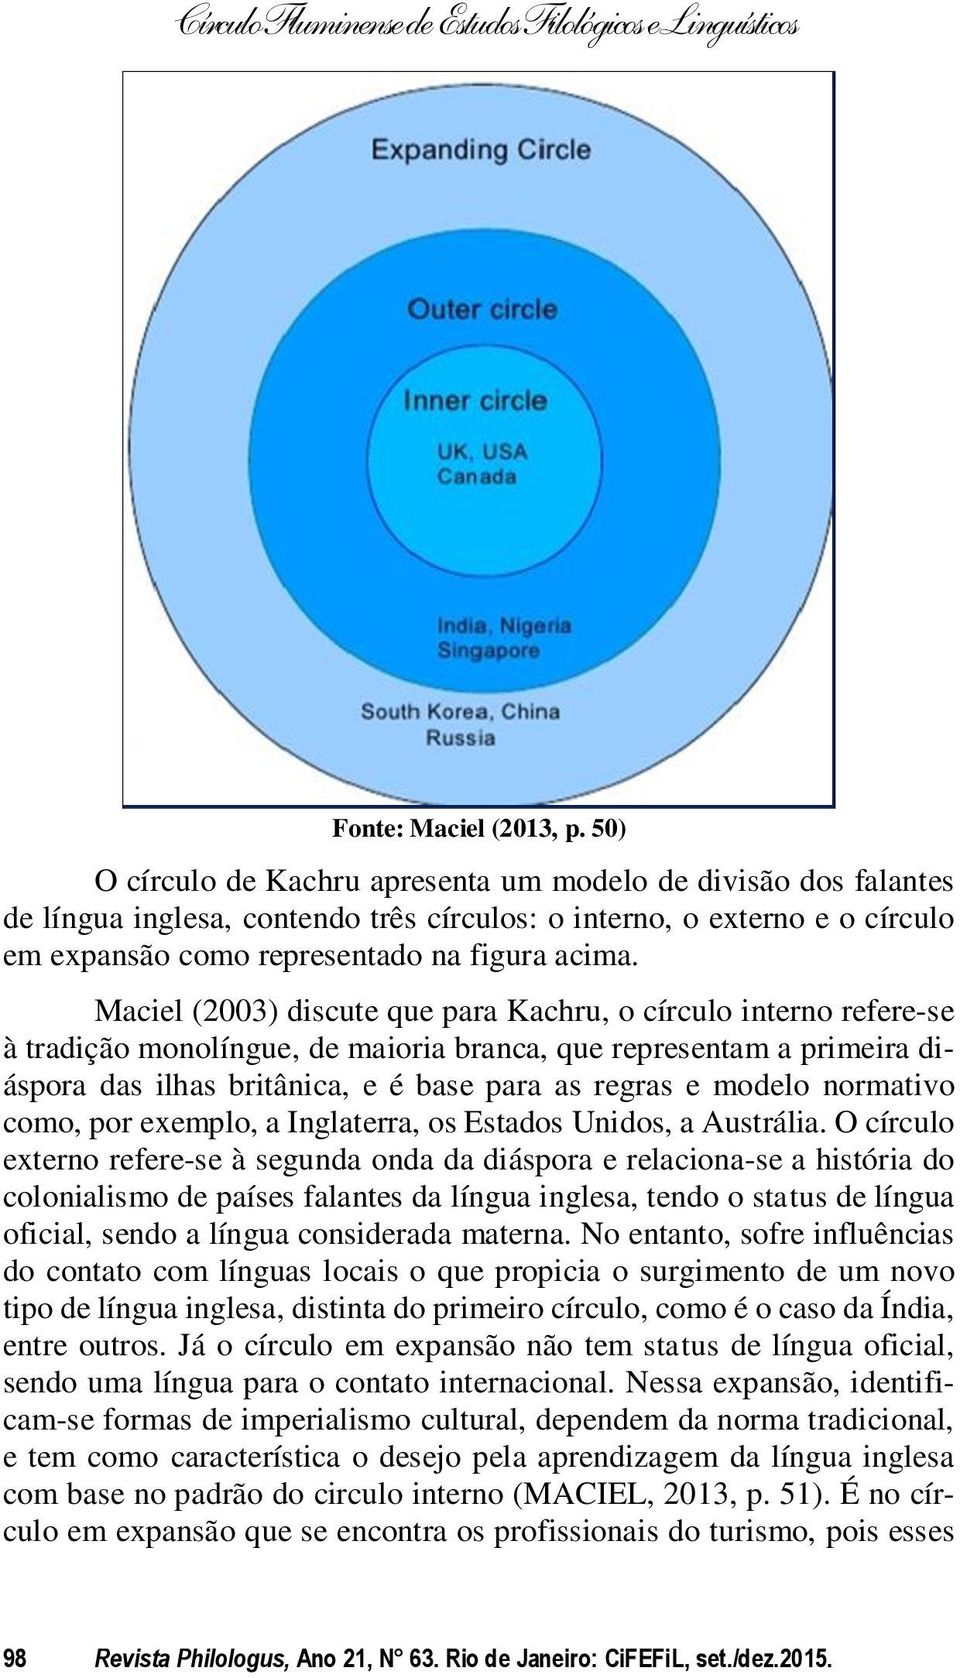 Maciel (2003) discute que para Kachru, o círculo interno refere-se à tradição monolíngue, de maioria branca, que representam a primeira diáspora das ilhas britânica, e é base para as regras e modelo